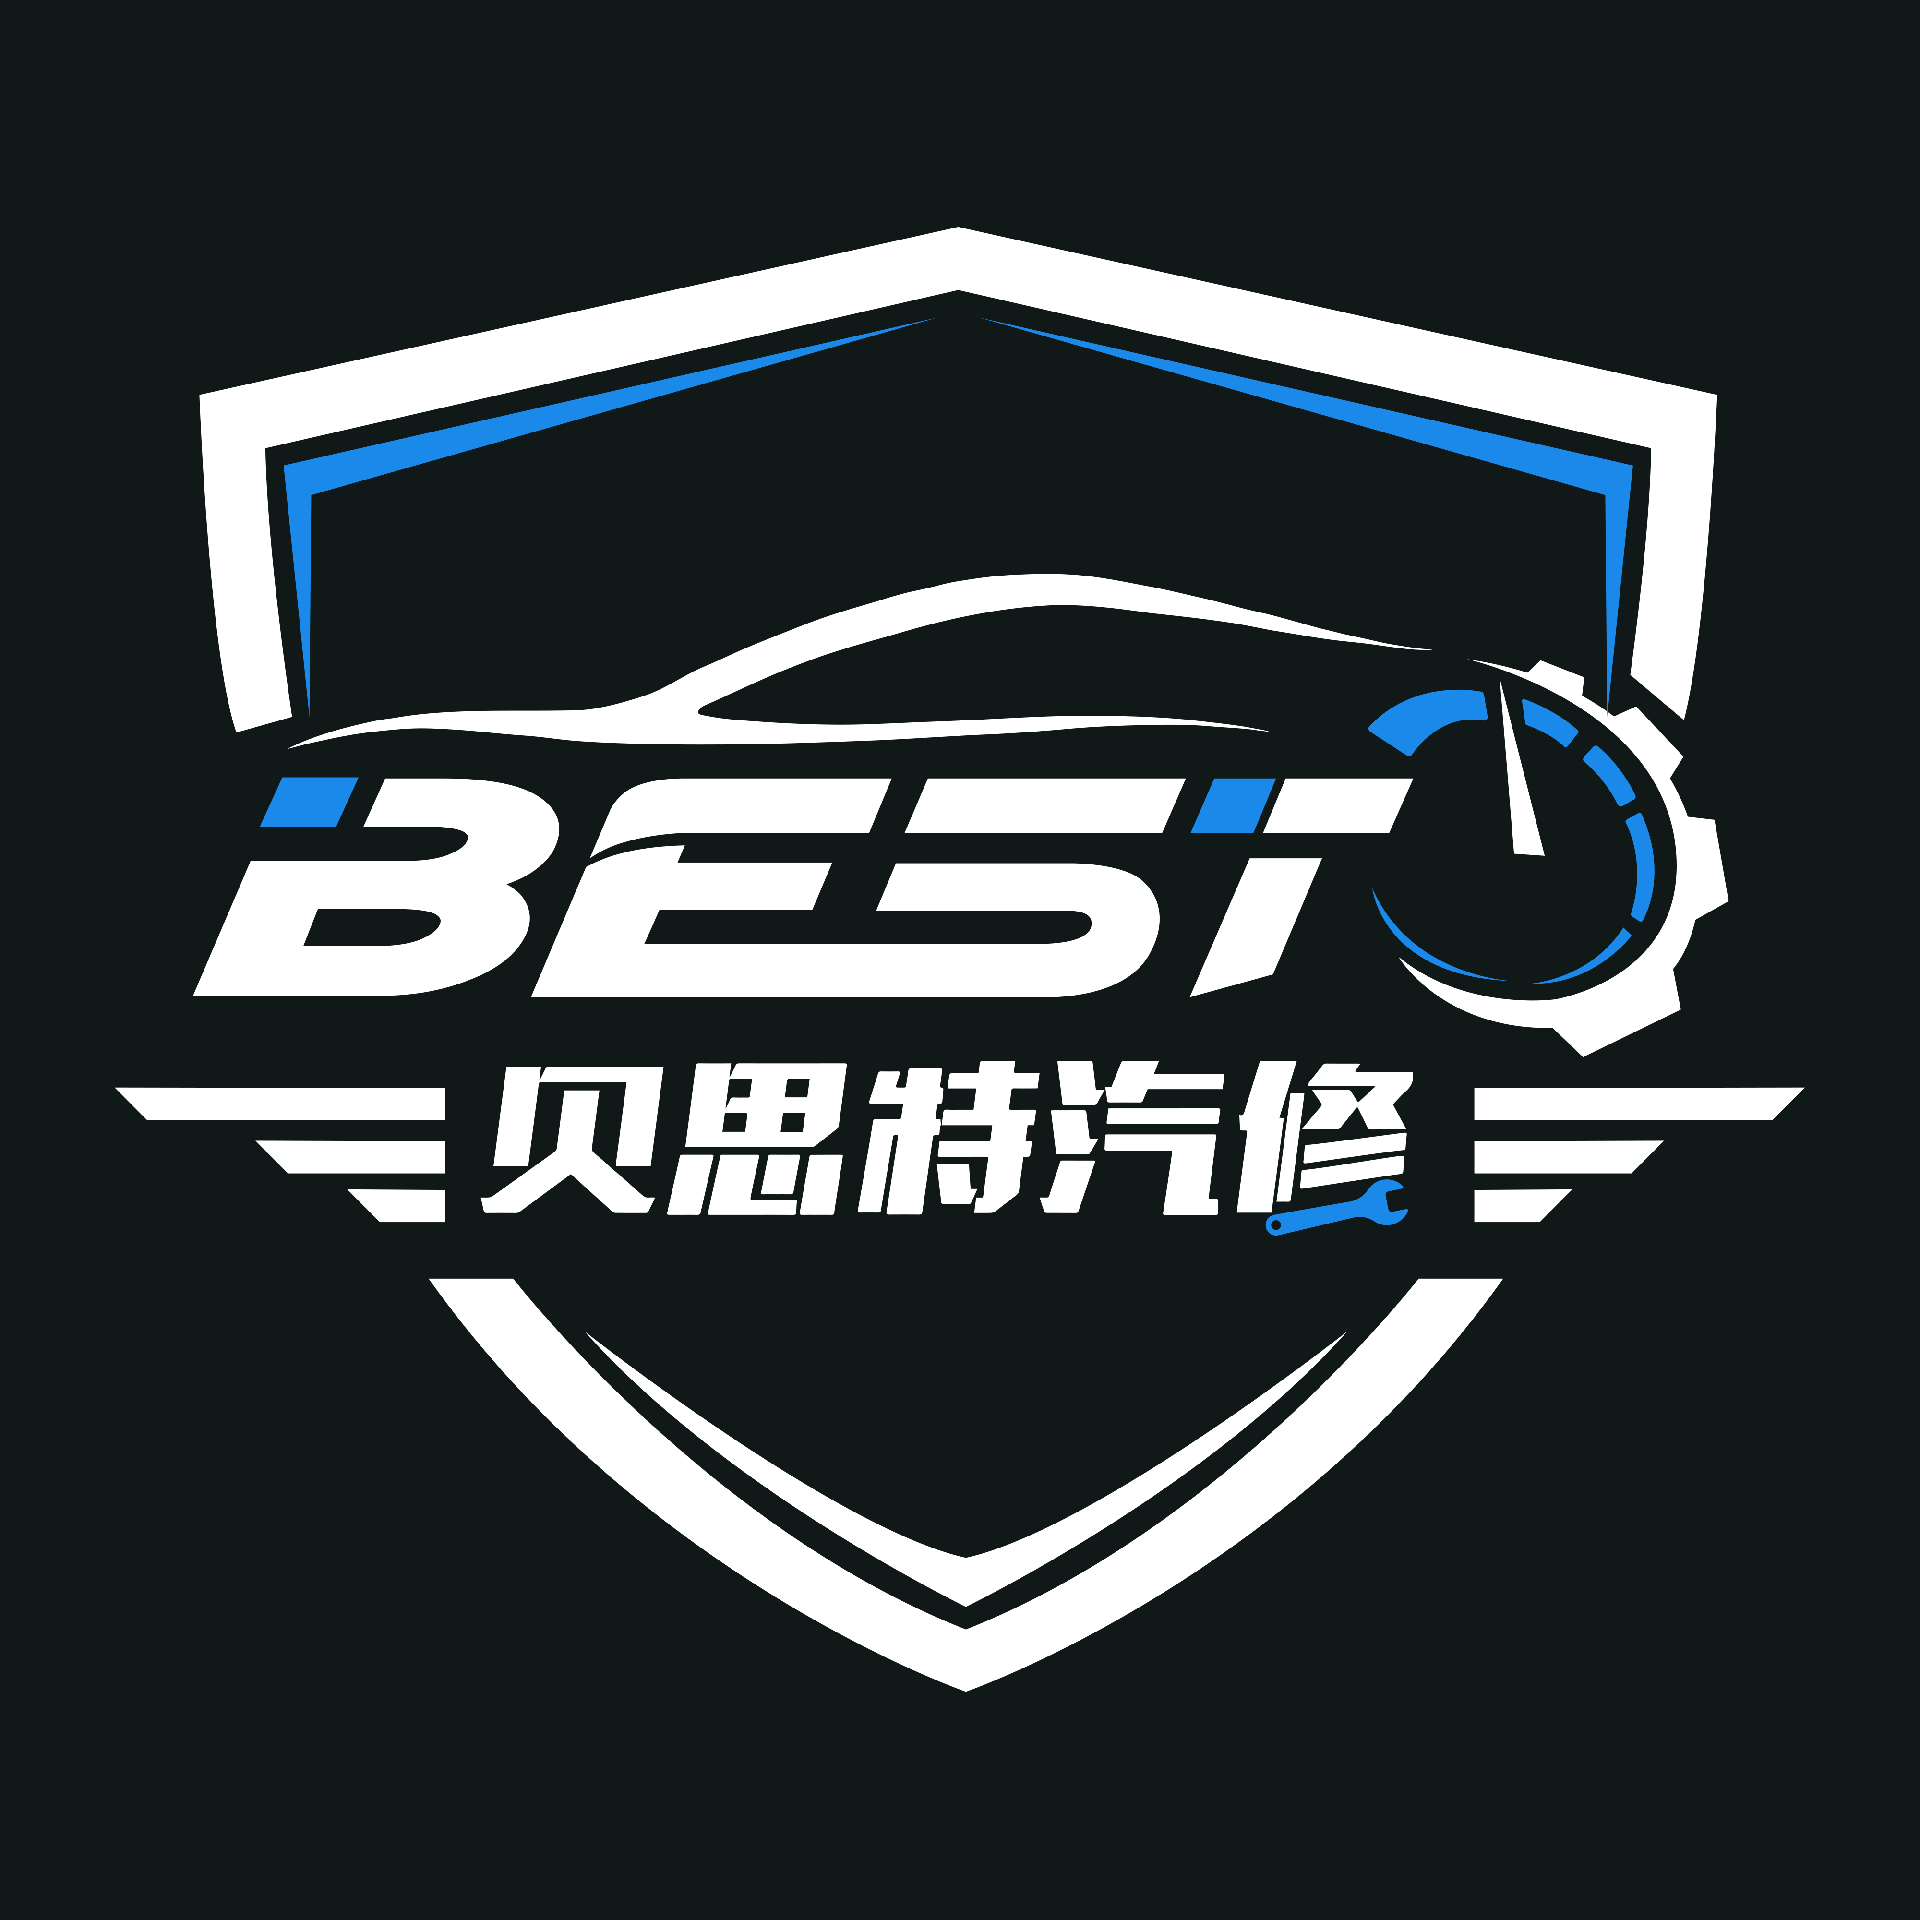 贝斯特汽修logo.png